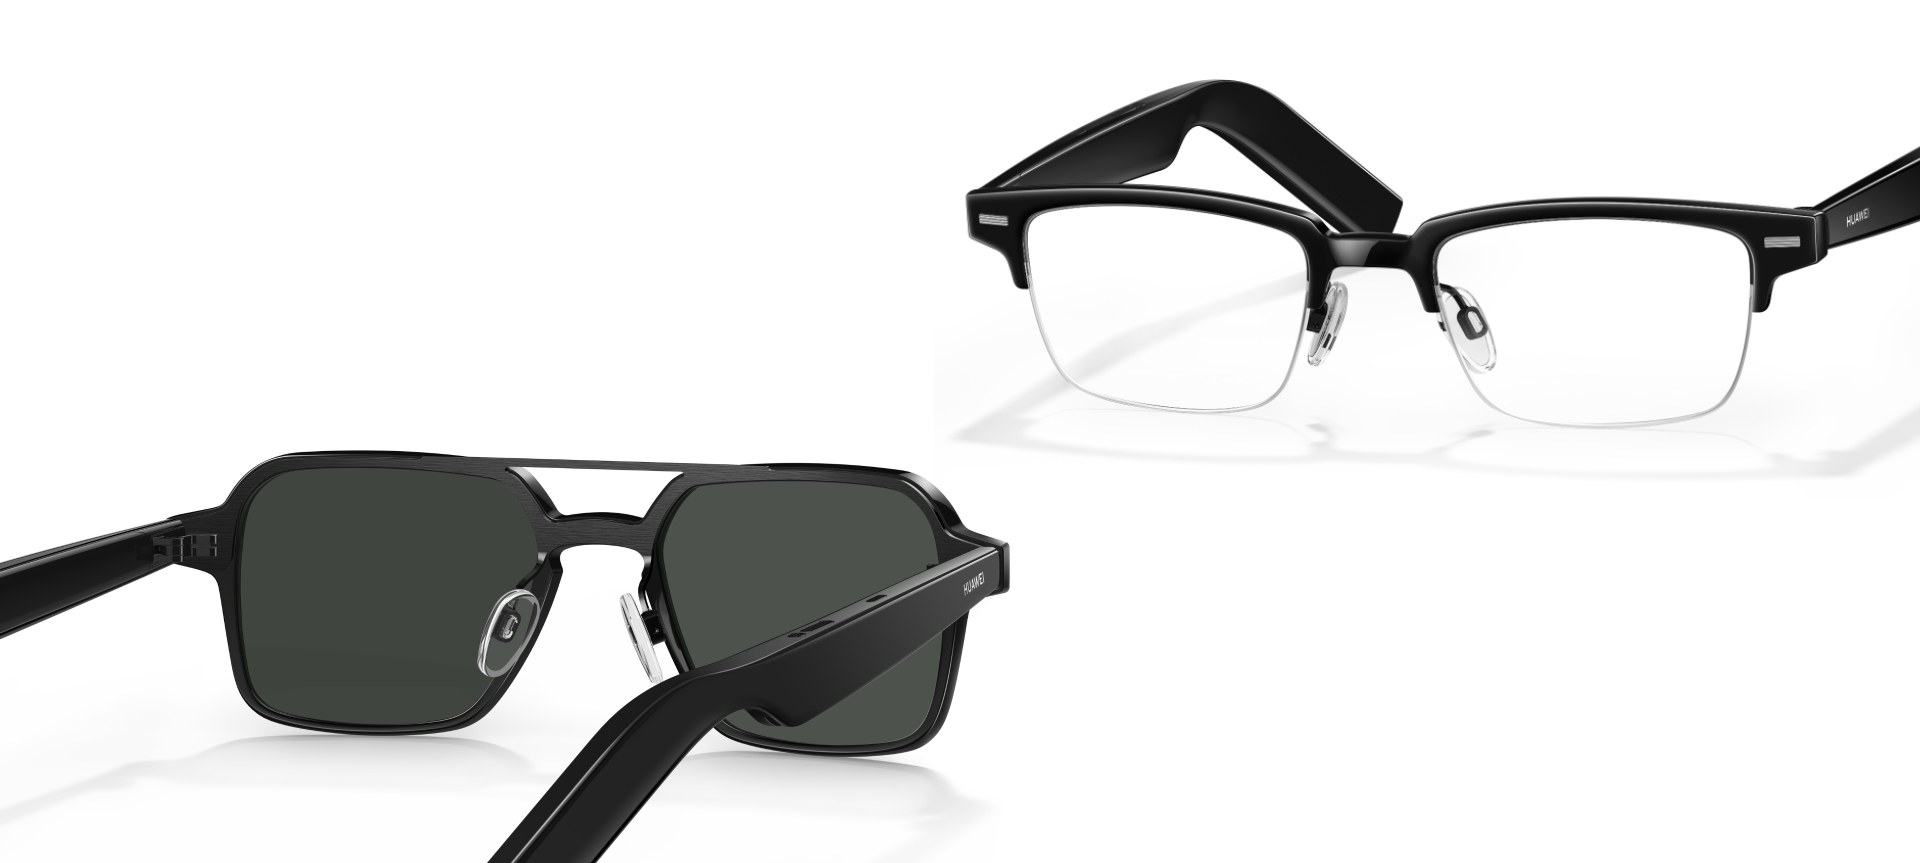 Gli occhiali intelligenti Huawei Eyewear 2 con altoparlanti e lenti Zeiss hanno fatto il loro debutto a livello mondiale